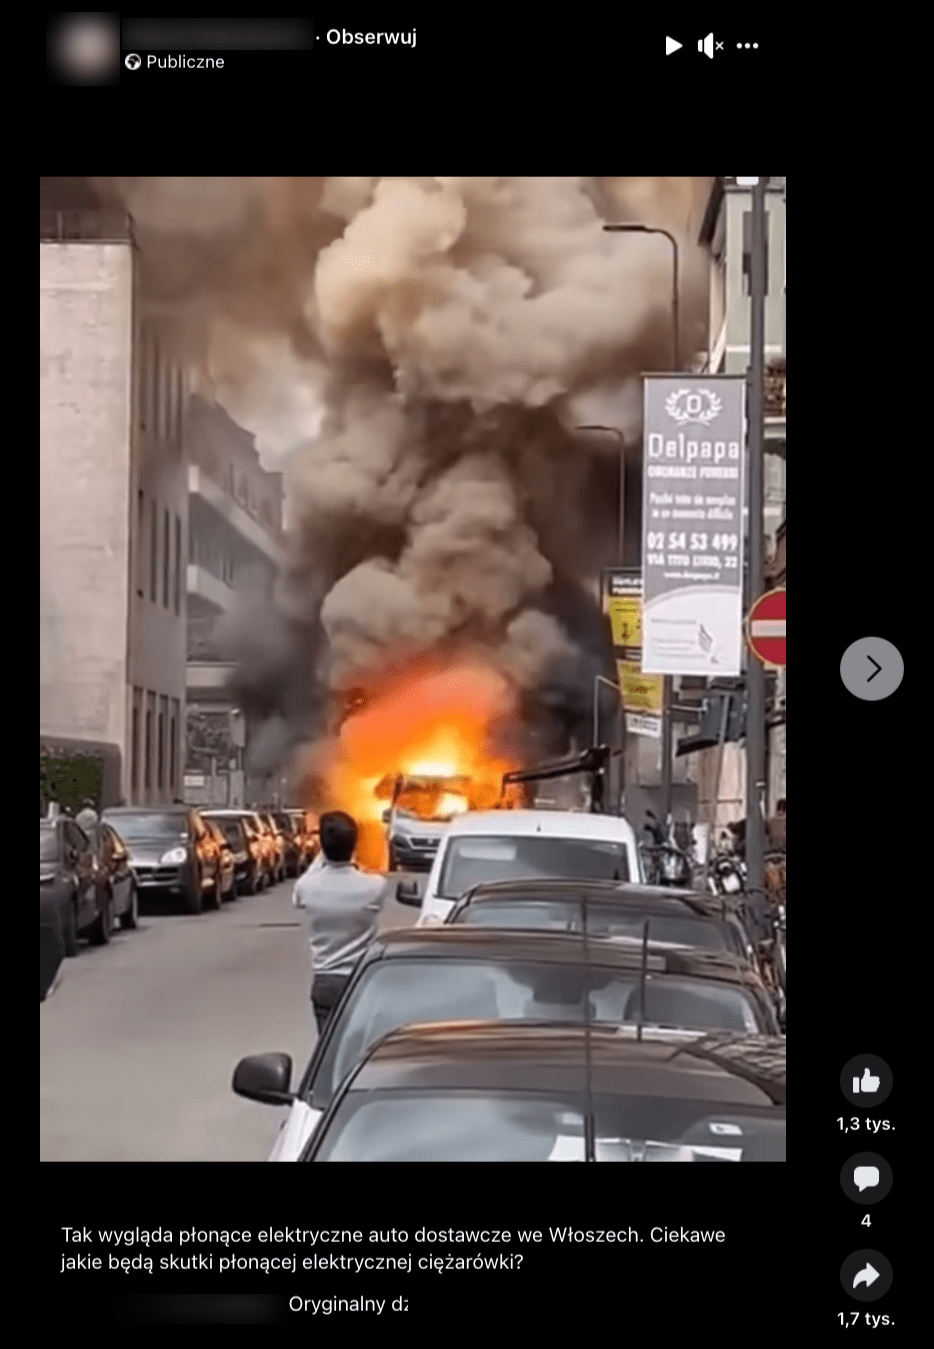 Zrzut ekranu z Facebooka. Na zdjęciu widzimy pożar białego busa na ulicy pełnej samochodów. Zdarzenie filmuje mężczyzna. 